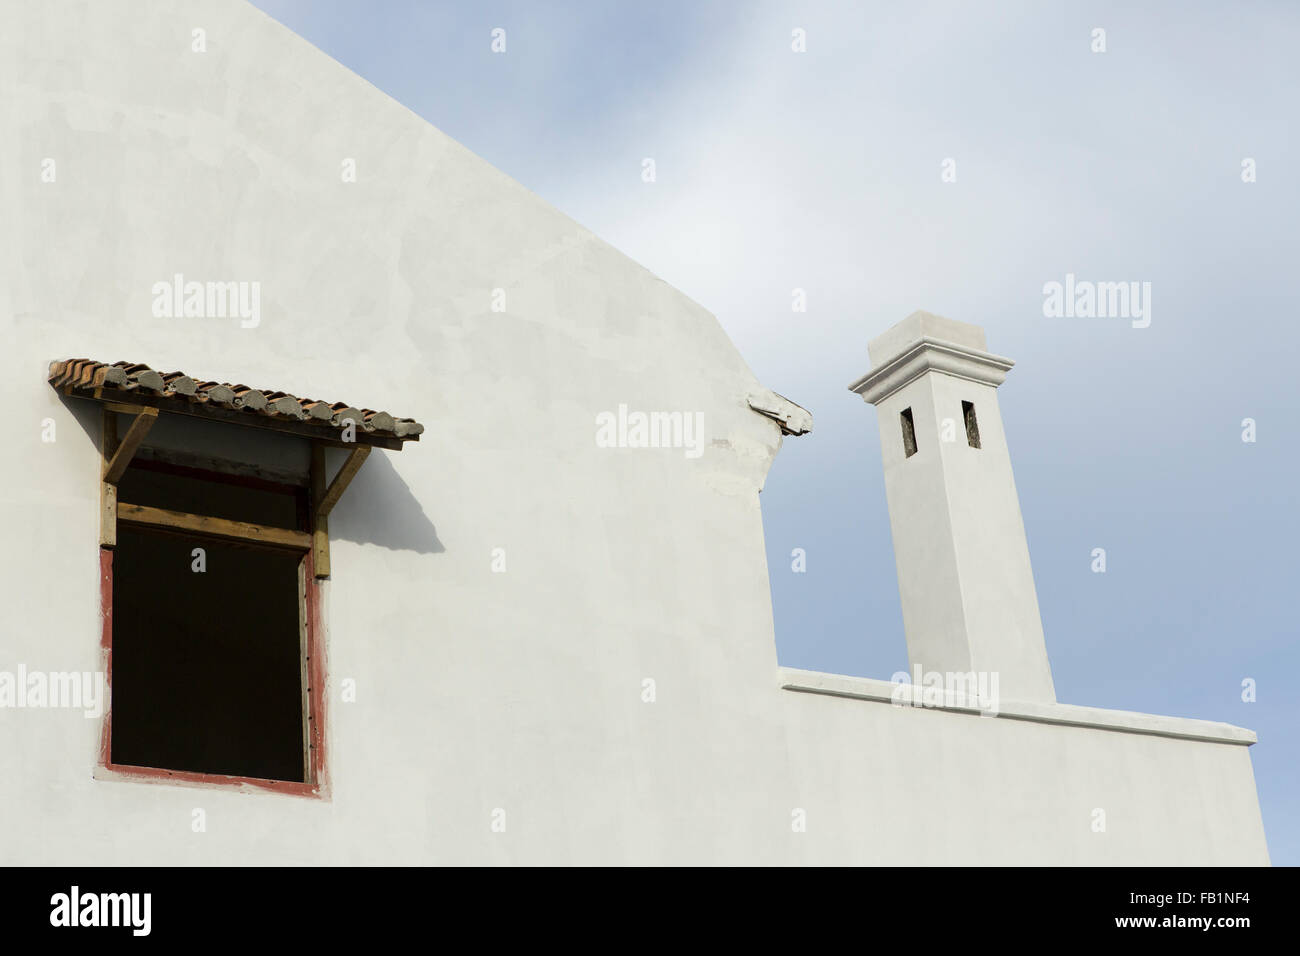 Asiatische Architektur, Nahaufnahme eines Fensters mit Regenhaube und einem ungewöhnlichen Entlüfter oder Schornstein. Weiße Mauern umgebene Gebäude gegen blau Stockfoto